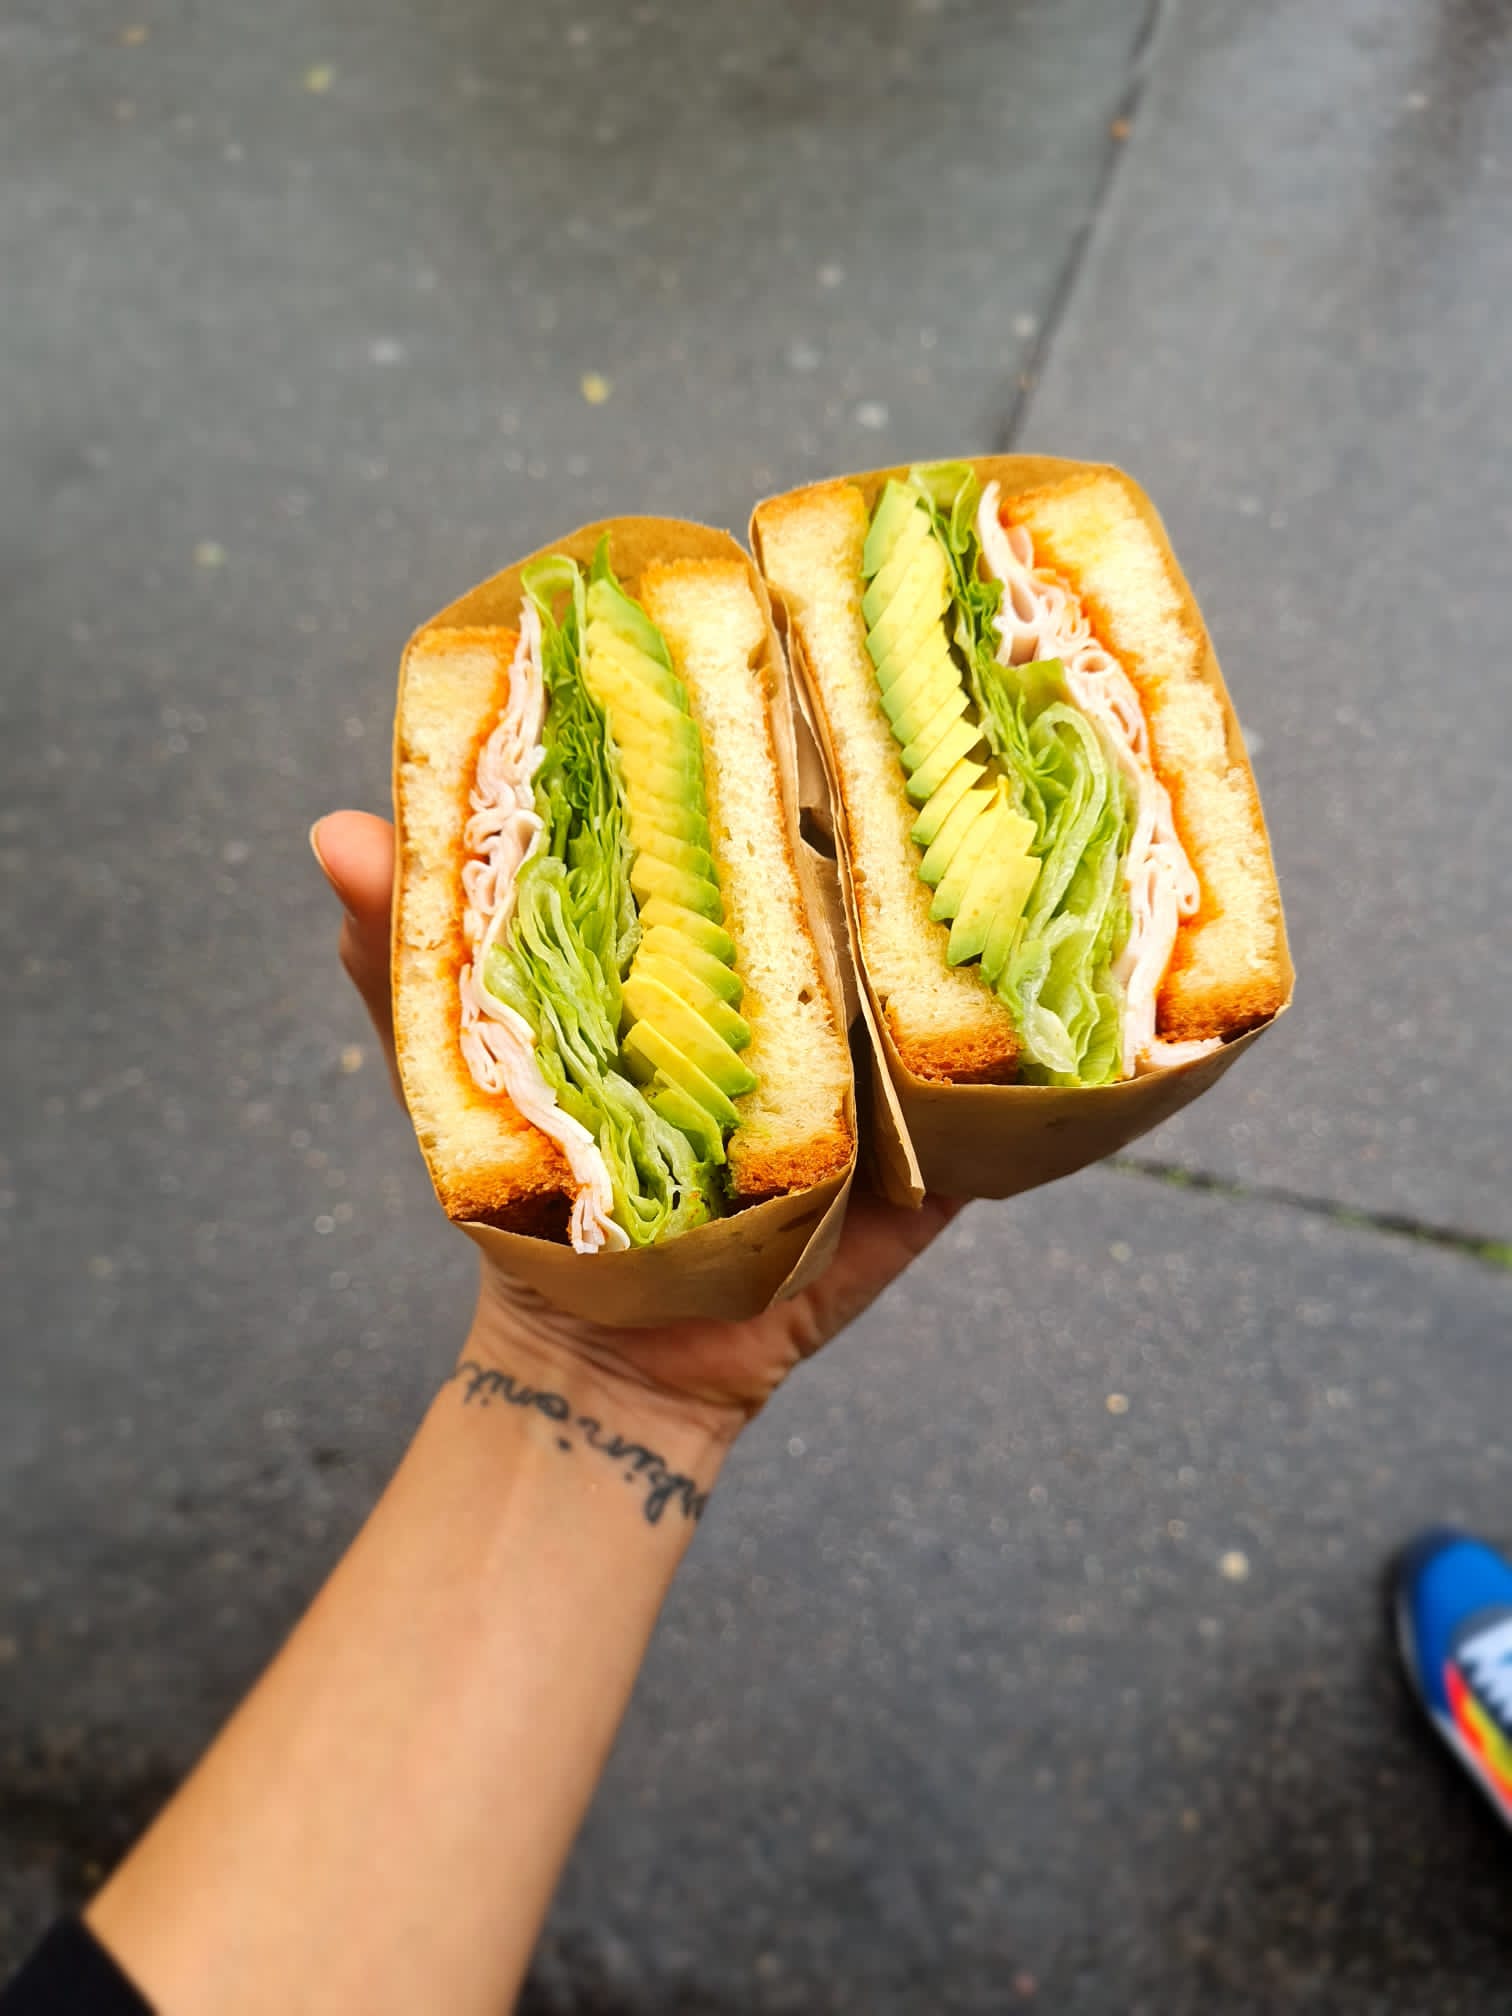 Sandwichs ultra-moelleux : courez chez Bill, petit nouveau de la rue du Télégraphe